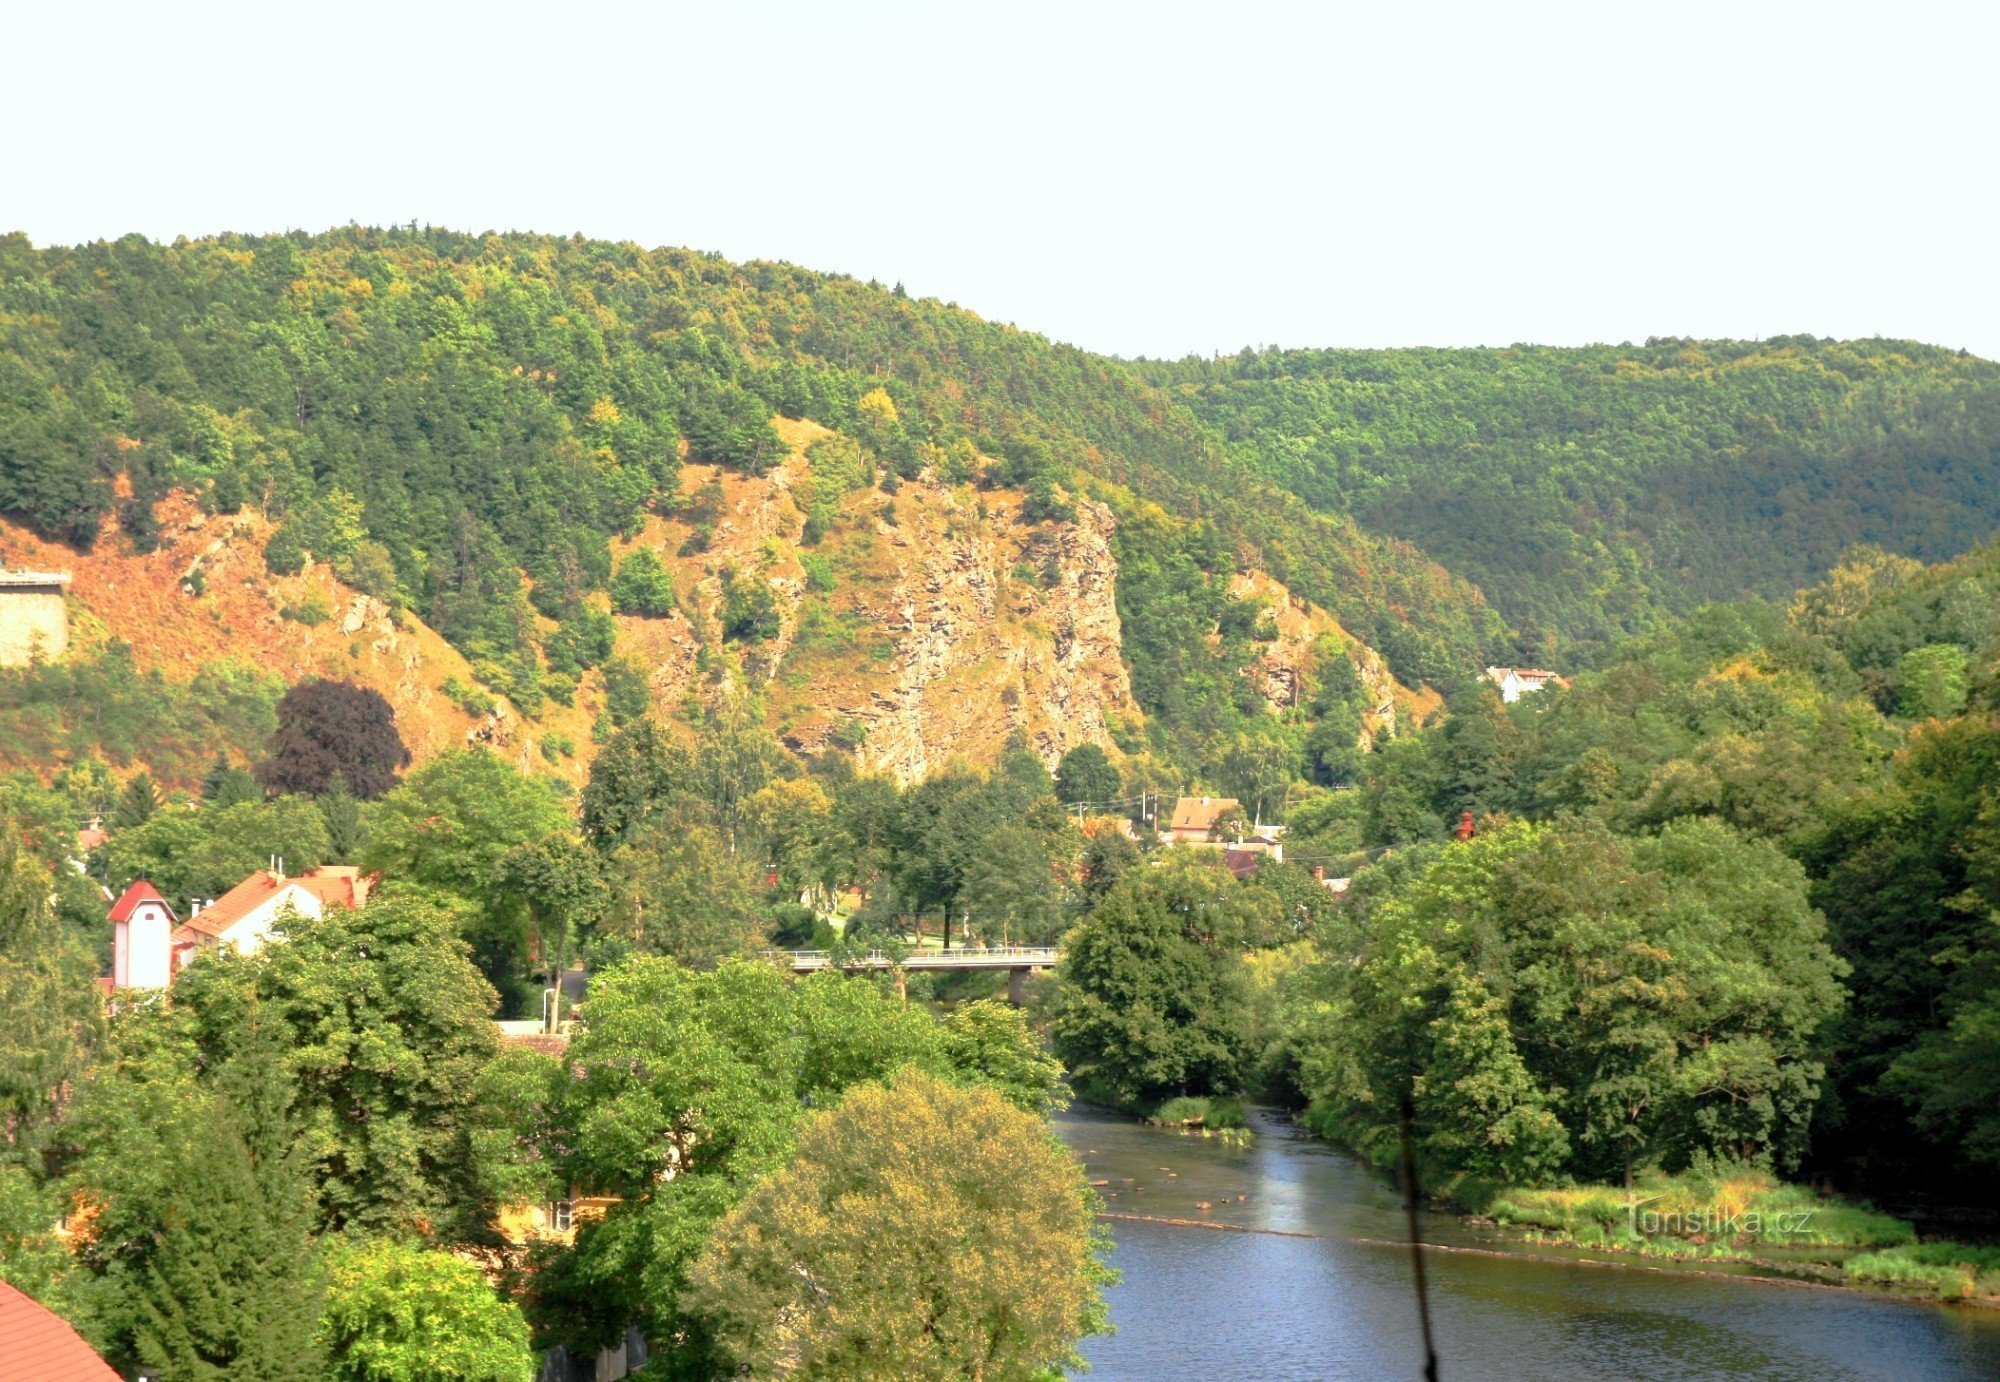 Hamerské údolí від замку Вранів